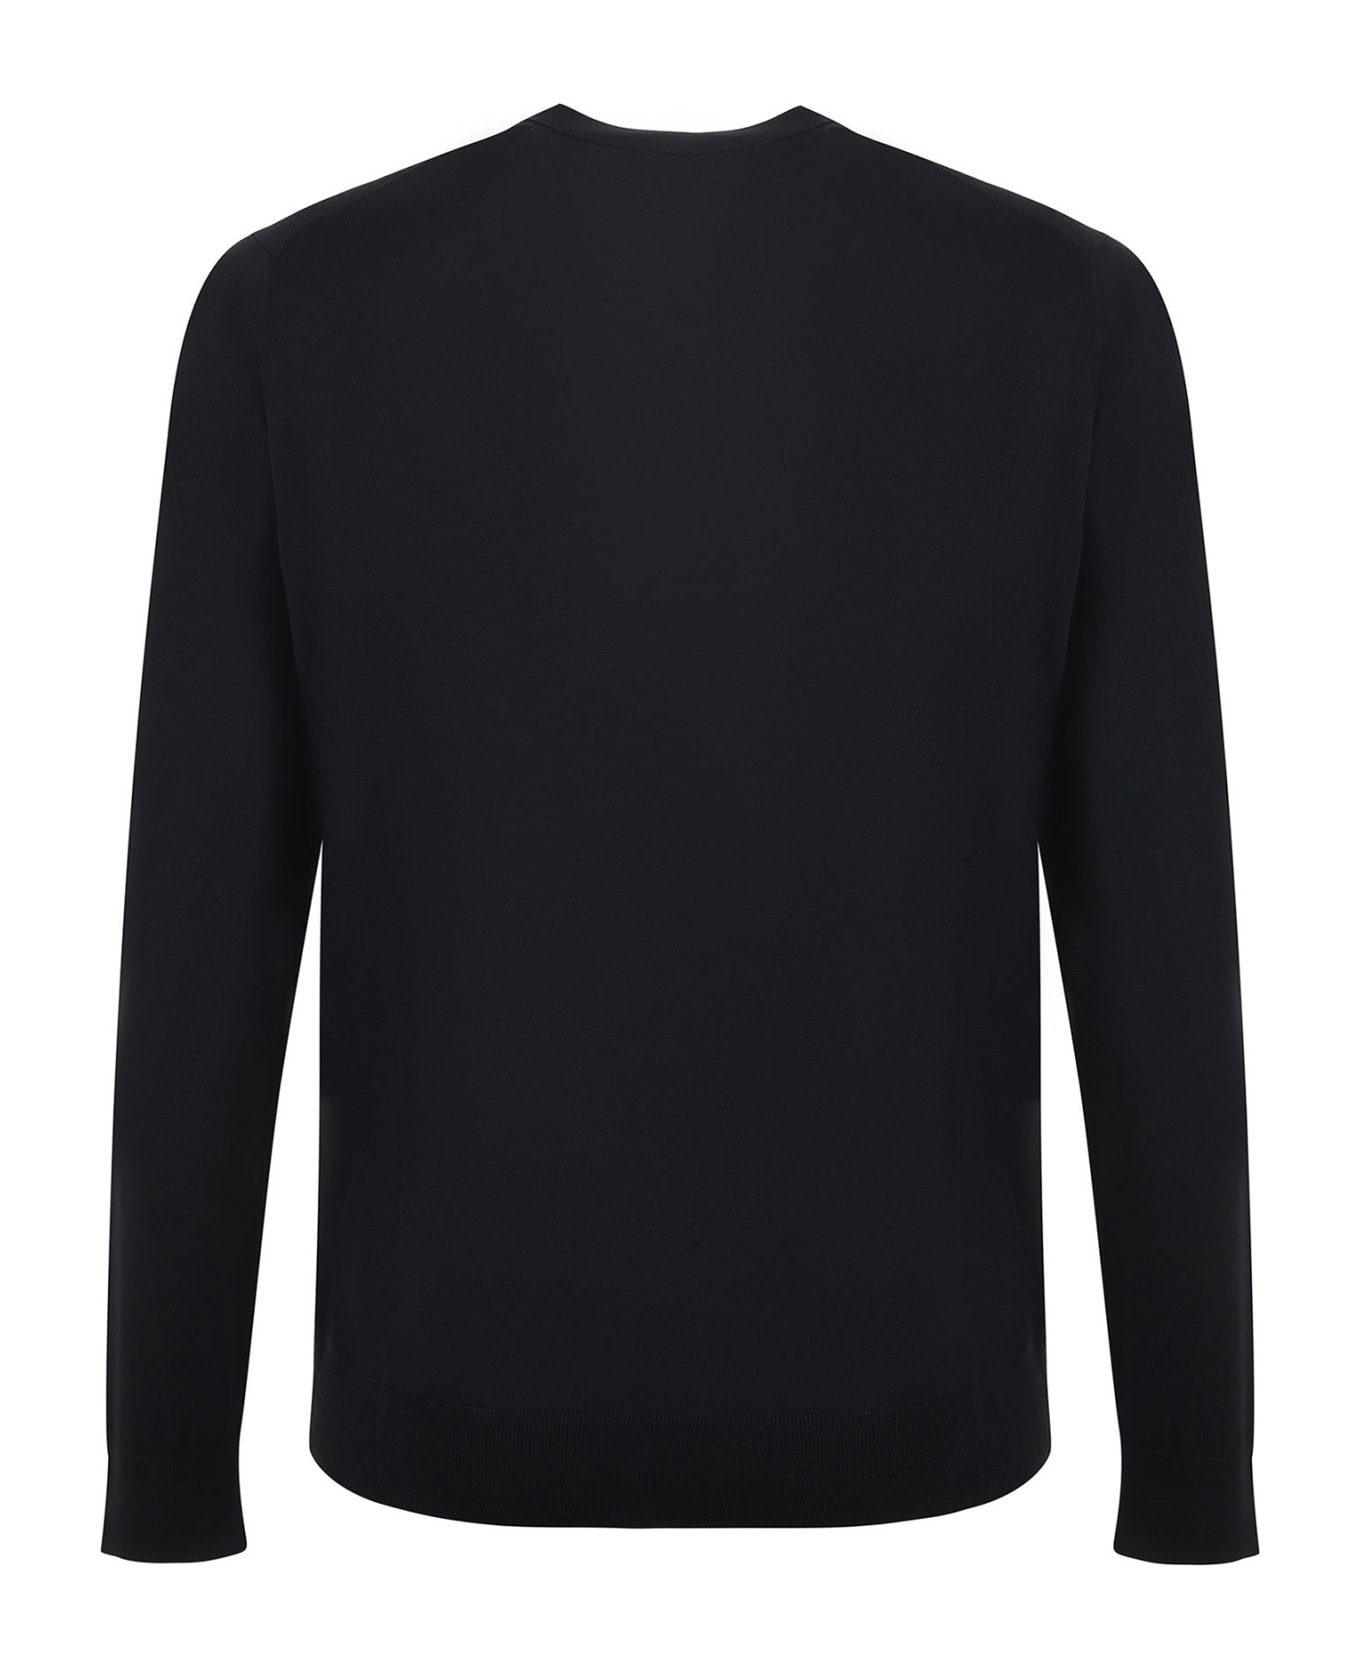 Paolo Pecora Black Crew-neck Sweater In Cotton And Silk Blend - NERO